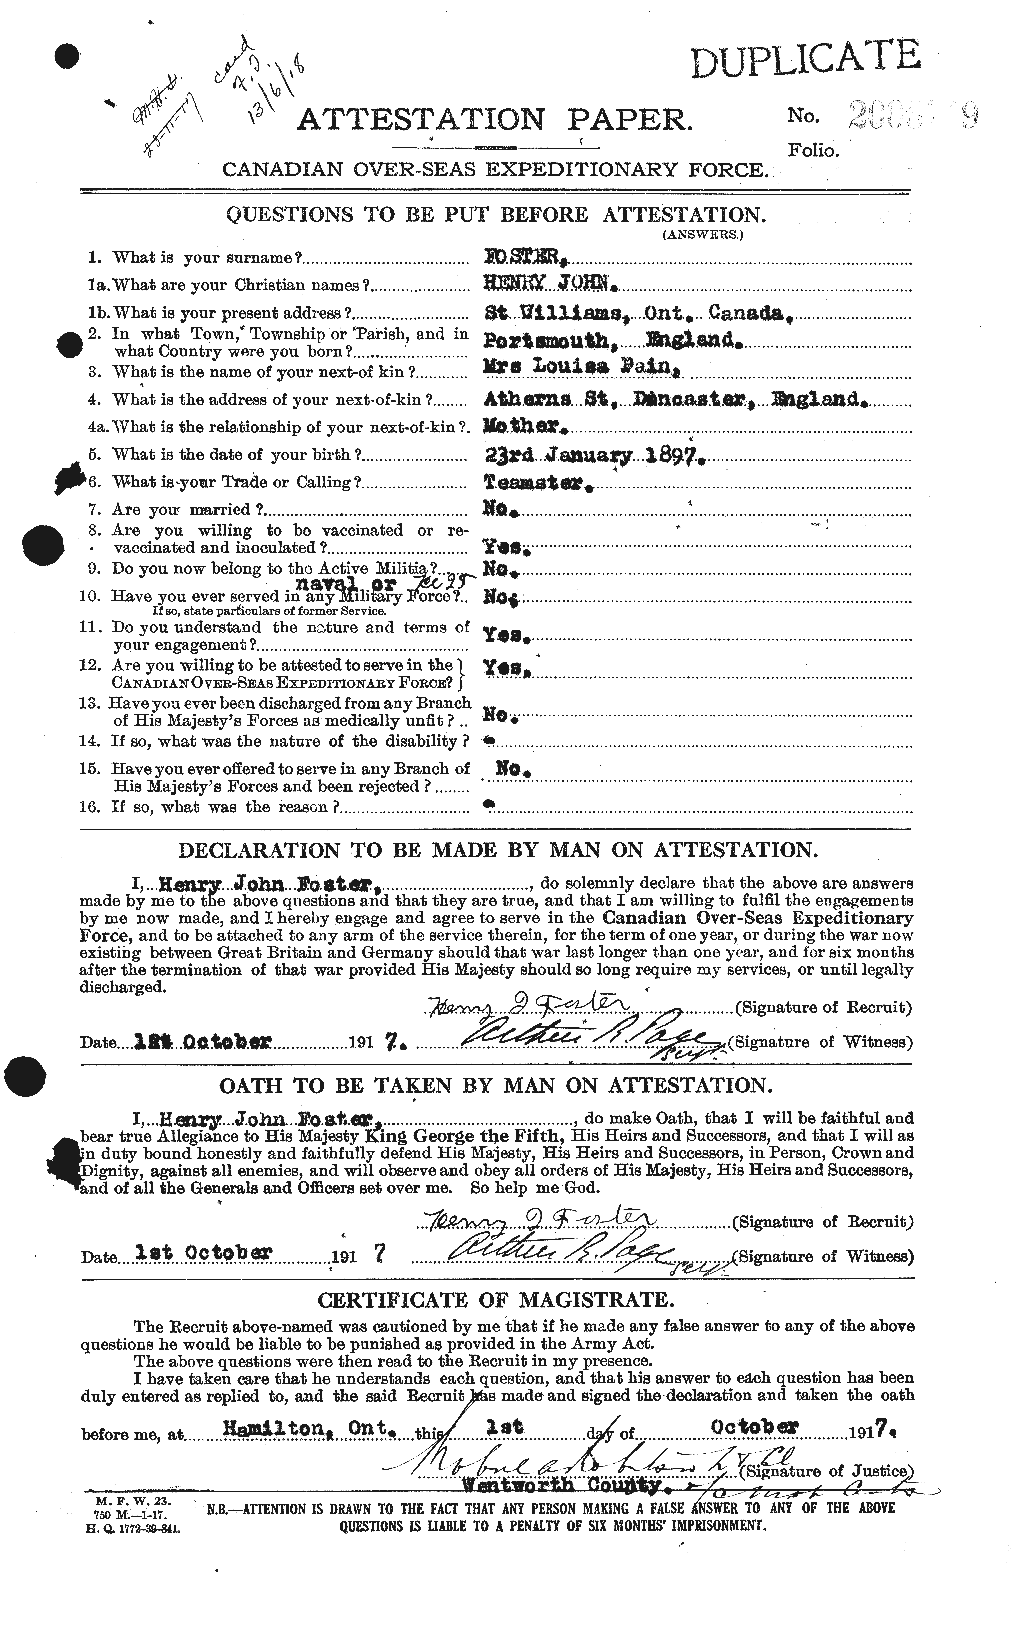 Dossiers du Personnel de la Première Guerre mondiale - CEC 333249a